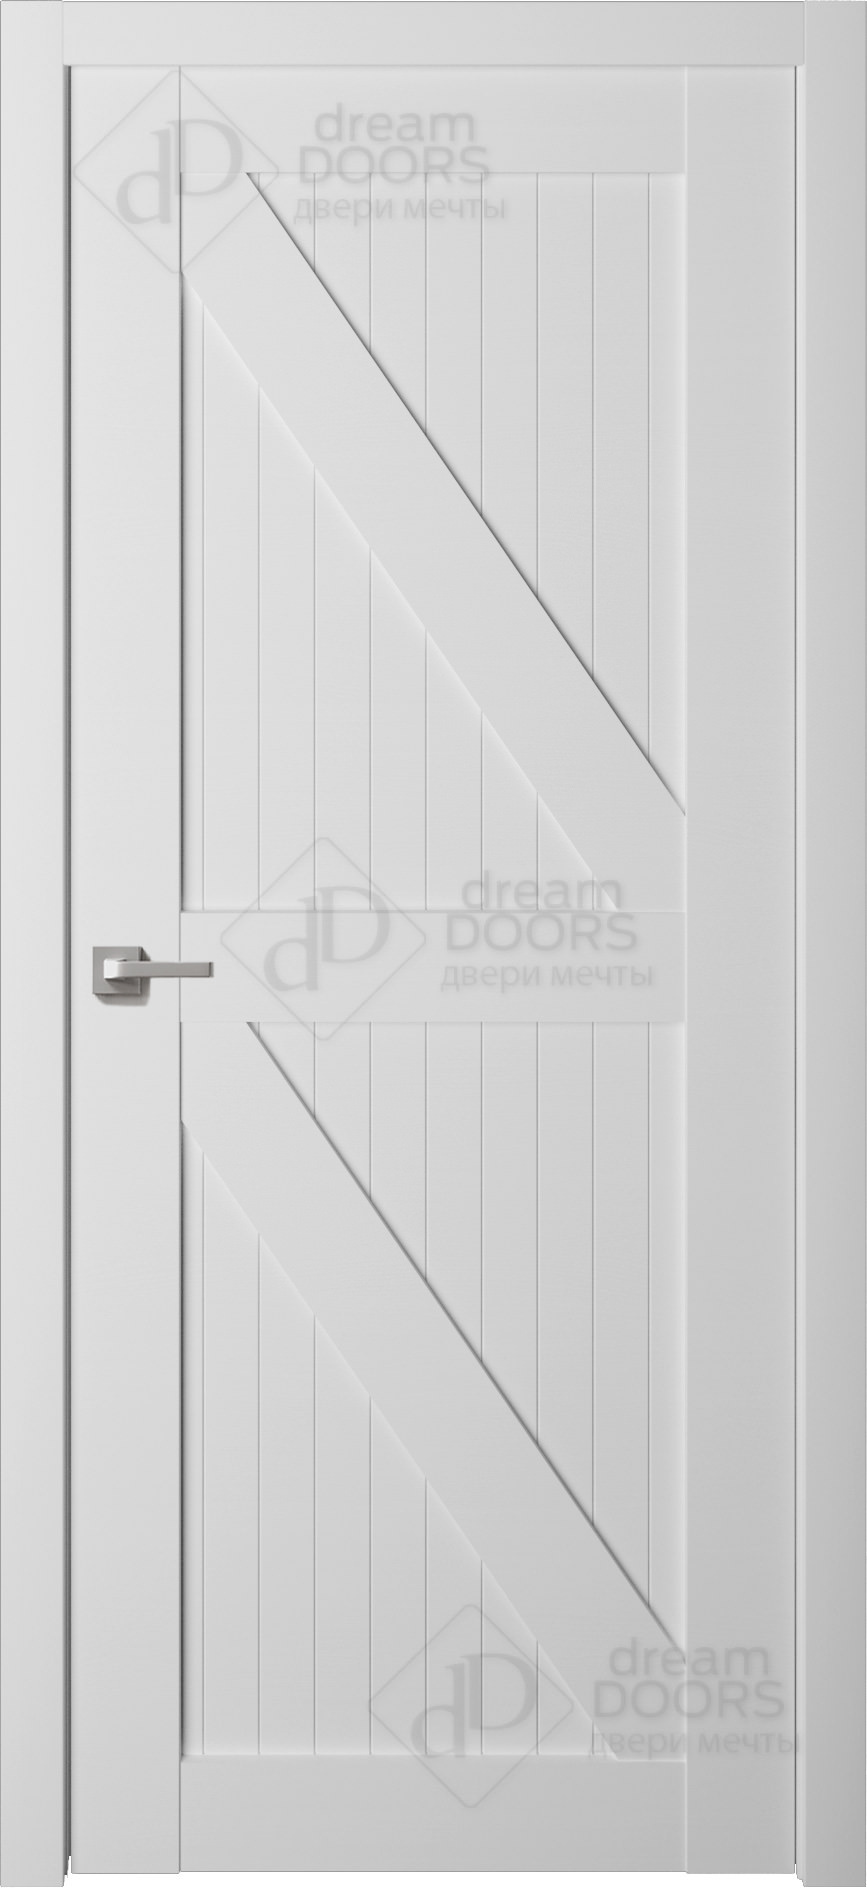 Dream Doors Межкомнатная дверь R3, арт. 5541 - фото №1